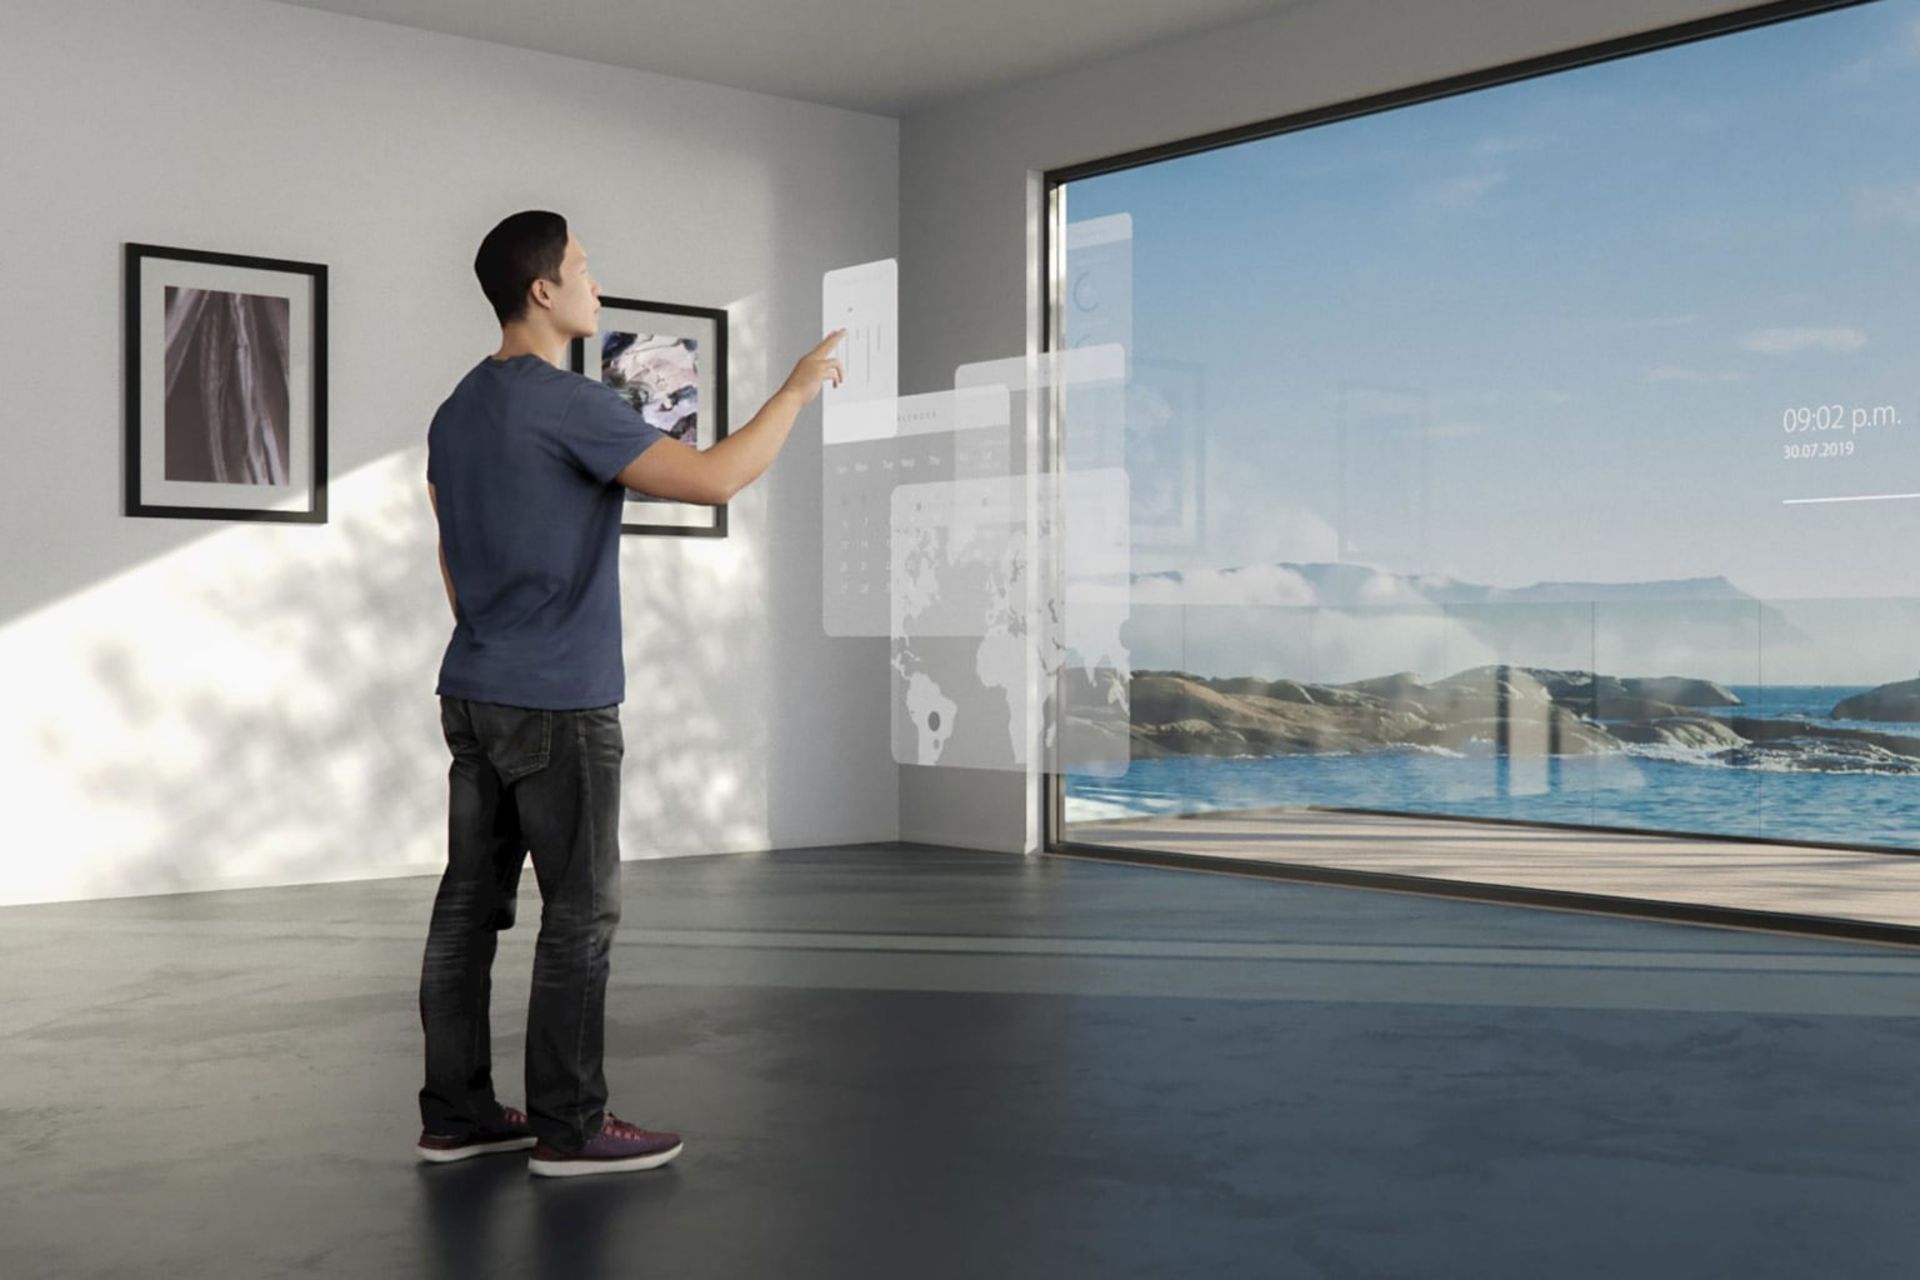 نمایش اطلاعات خانه با دوربین شفاف زایس کنار یک مرد با تیشرت آبی